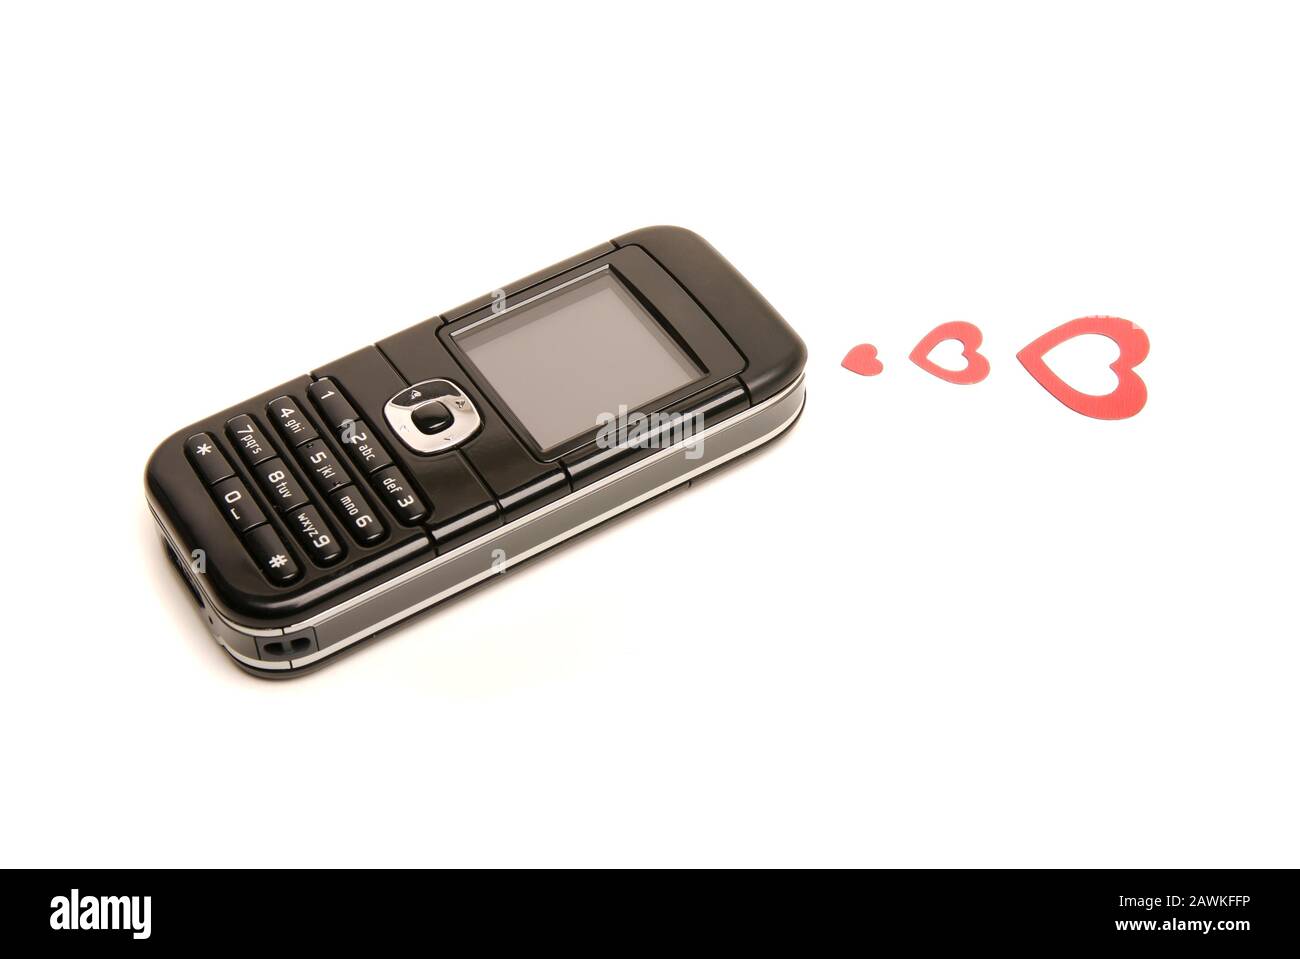 Cellulare vecchio stile su sfondo bianco con tre cuori rossi che inviano un messaggio d'amore Foto Stock